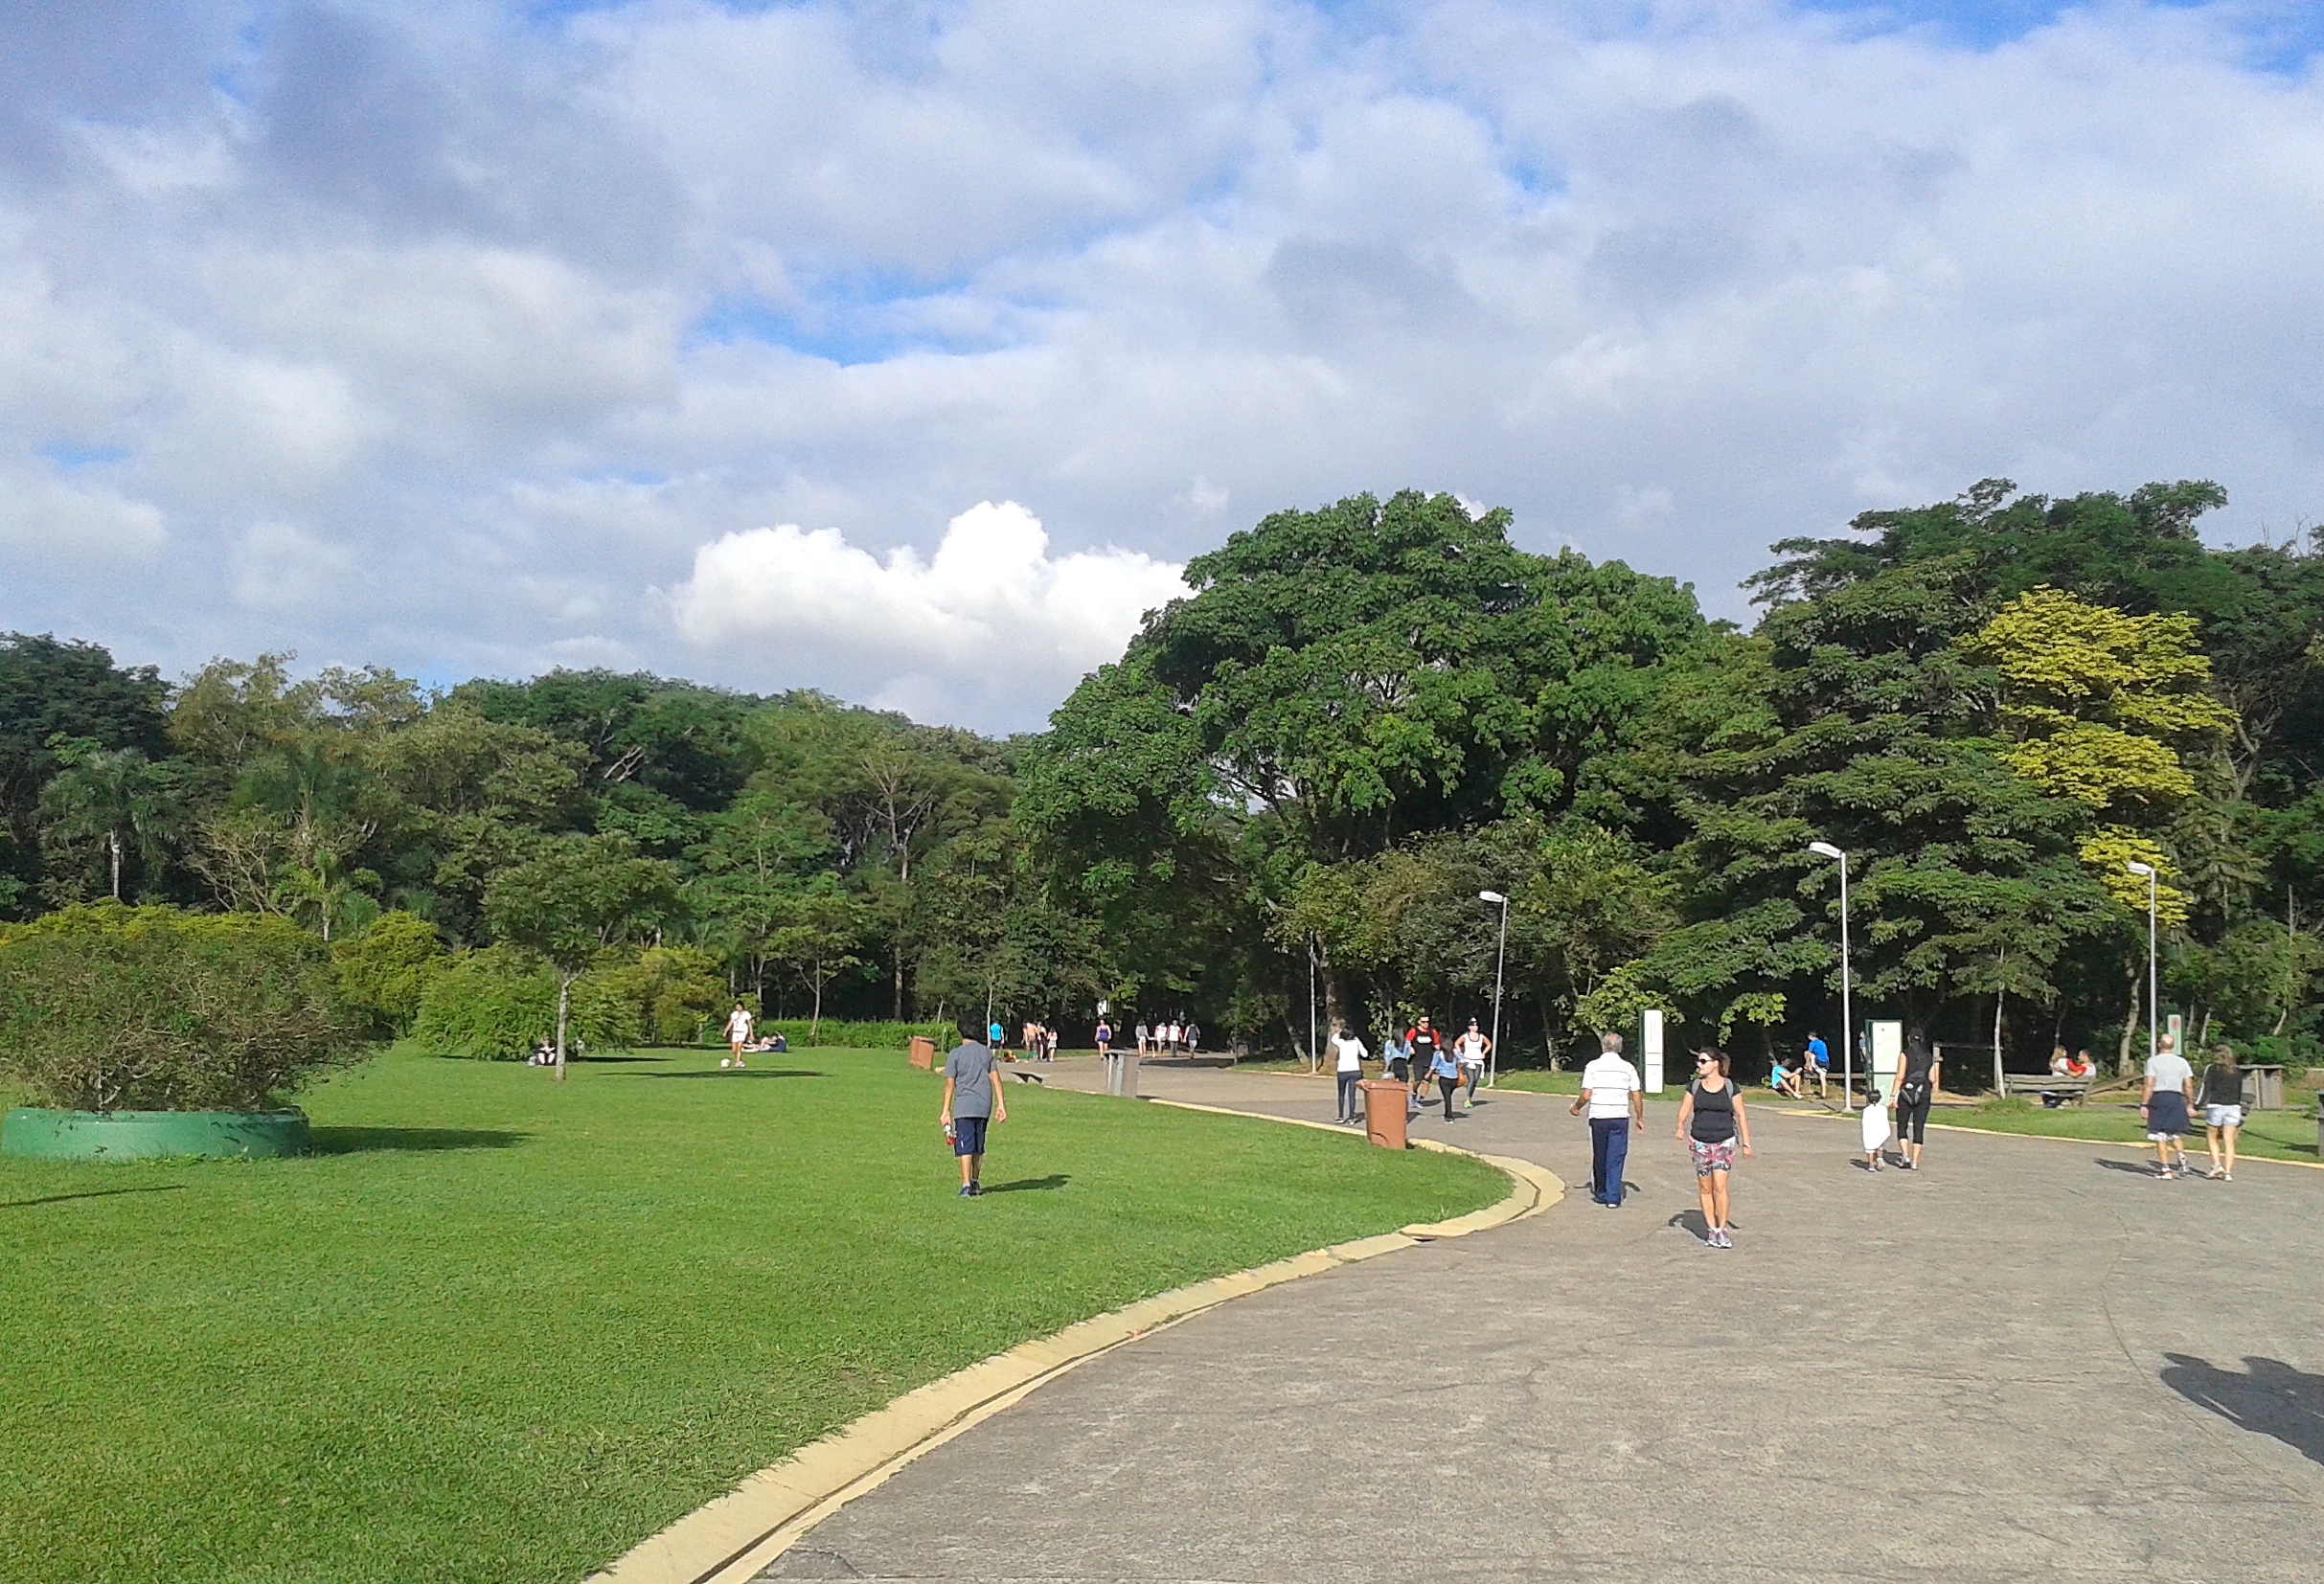 Pessoas caminhando e andando de bicicletas em caminho pavimentado e entre árvores, dentro de um parque
